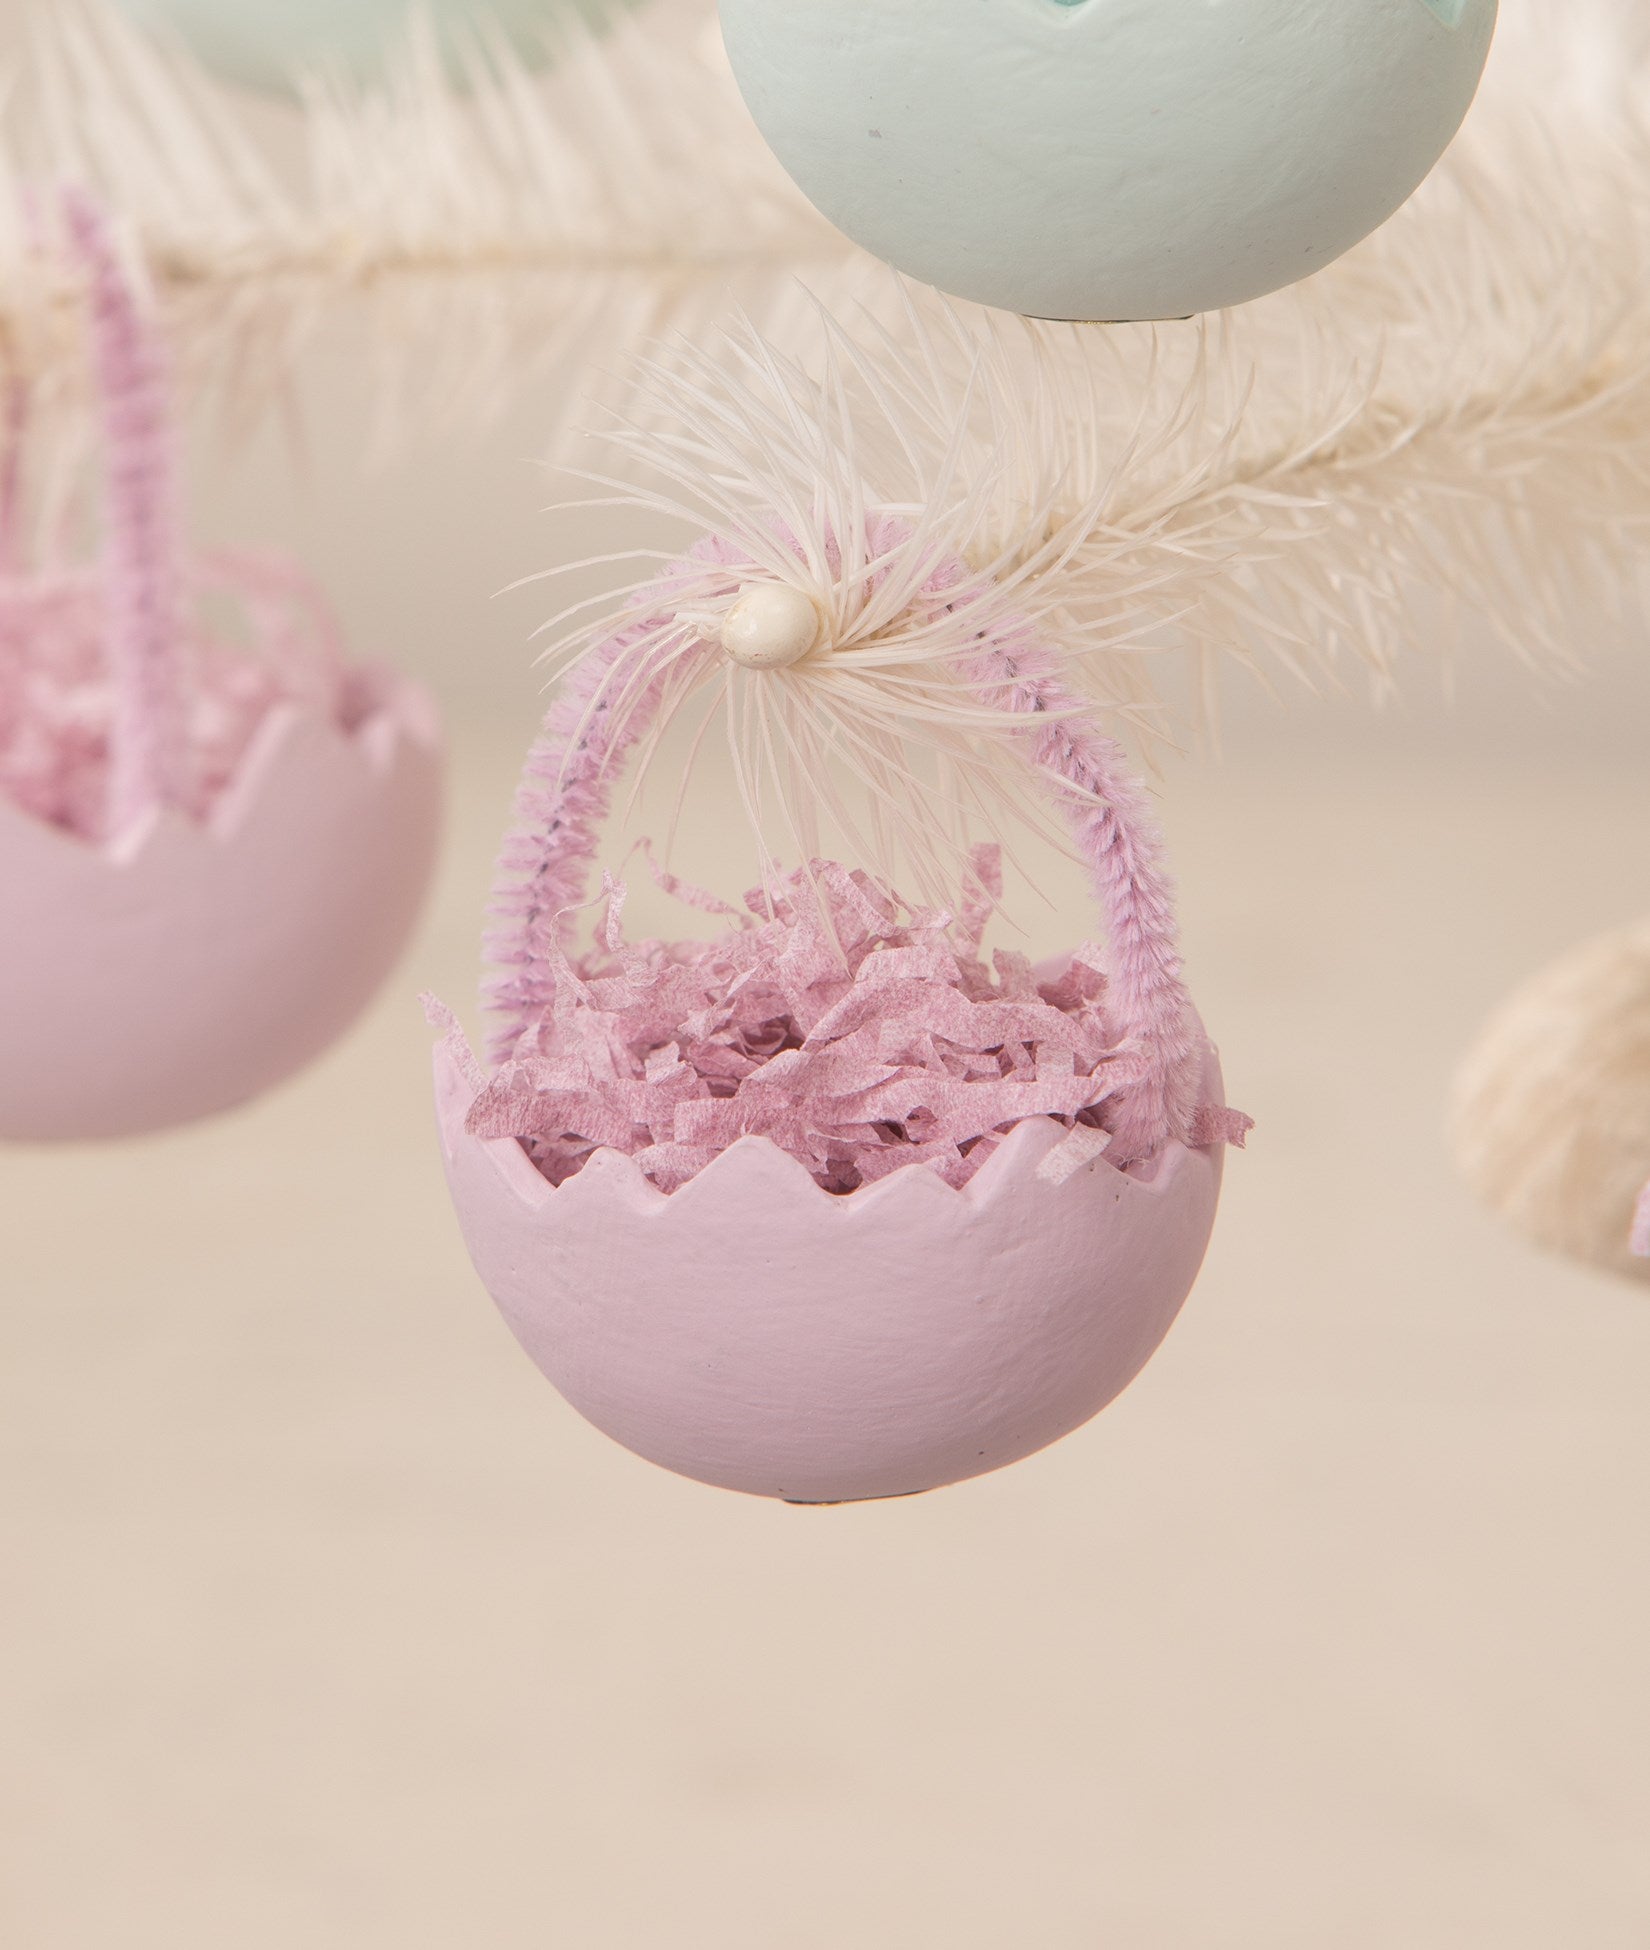 Lavender Cracked Egg Basket Ornaments